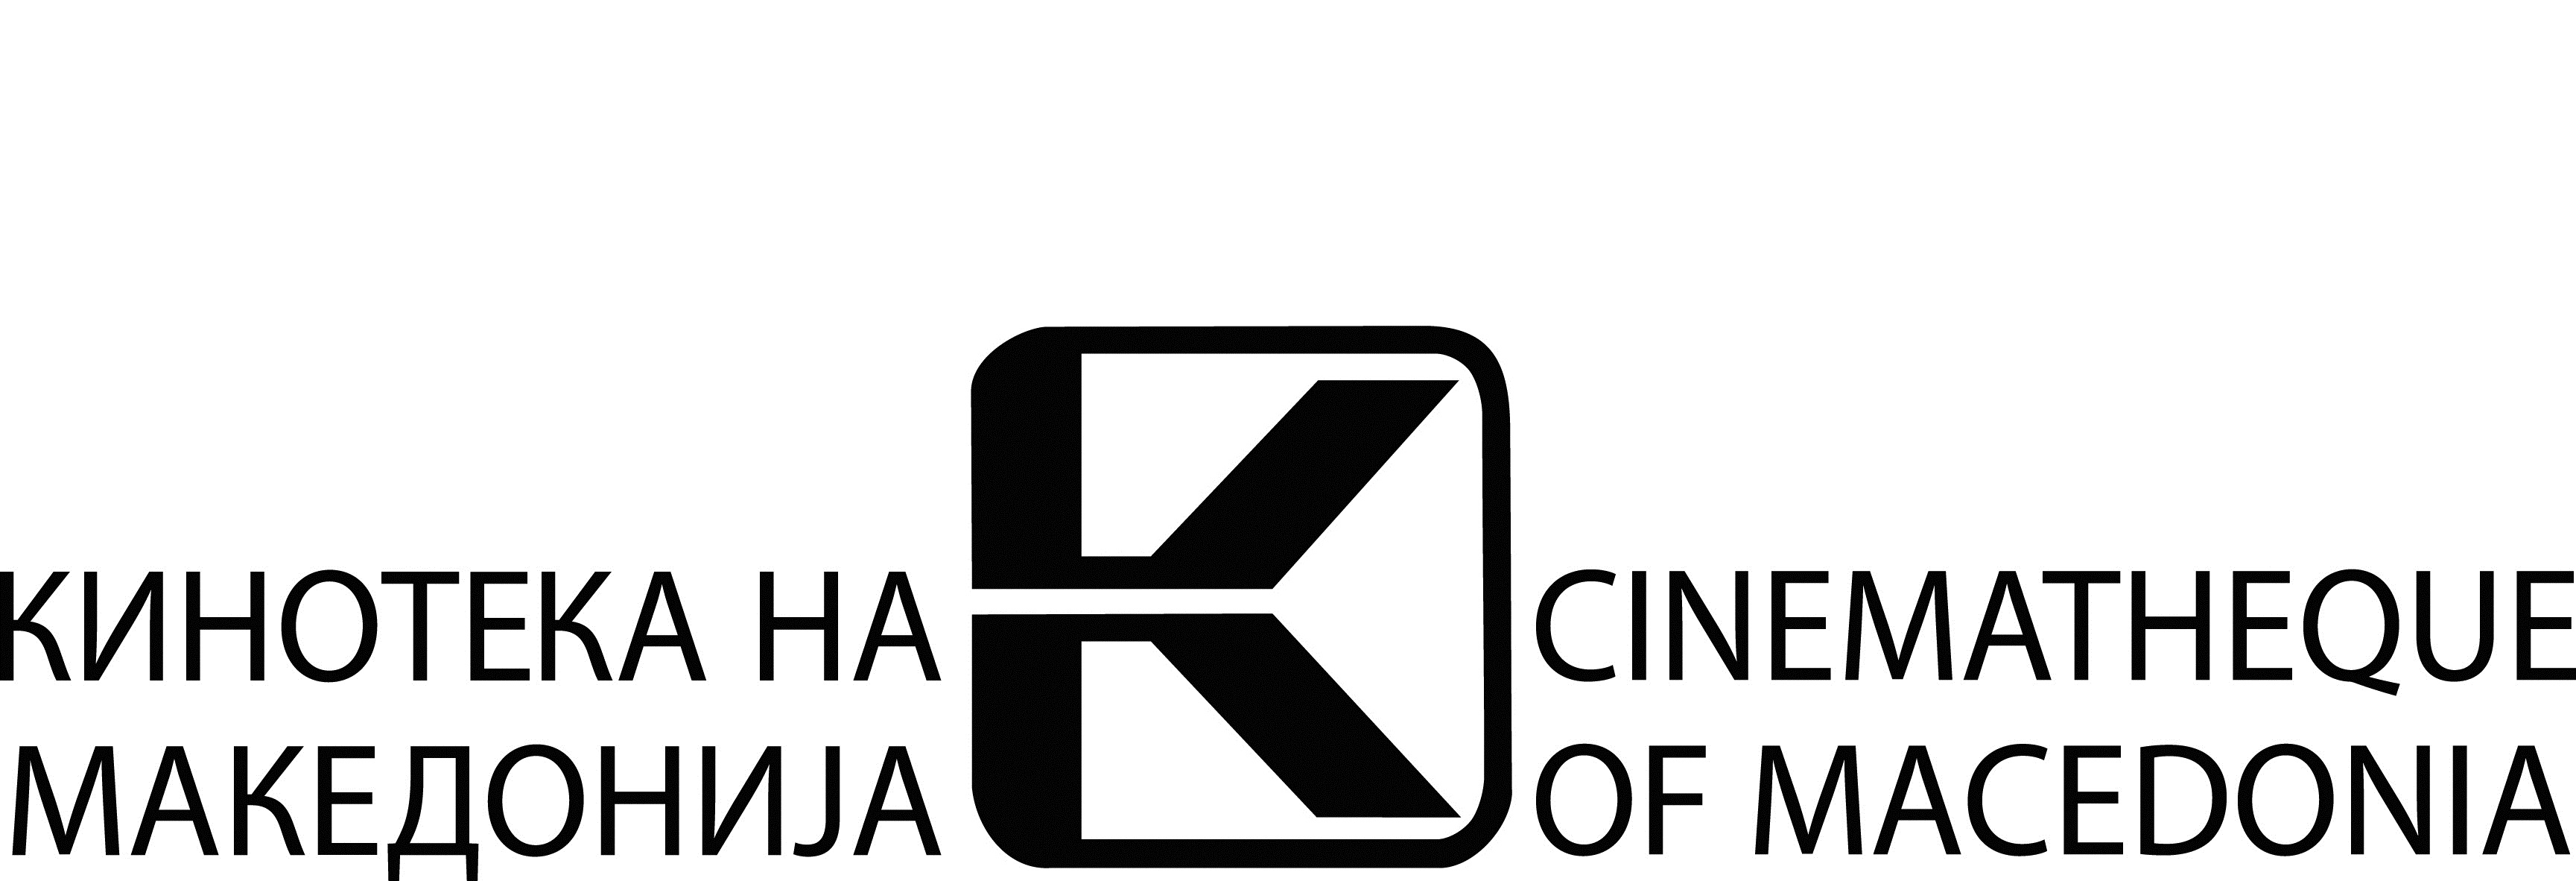 Kinoteka na Makedoija Logo